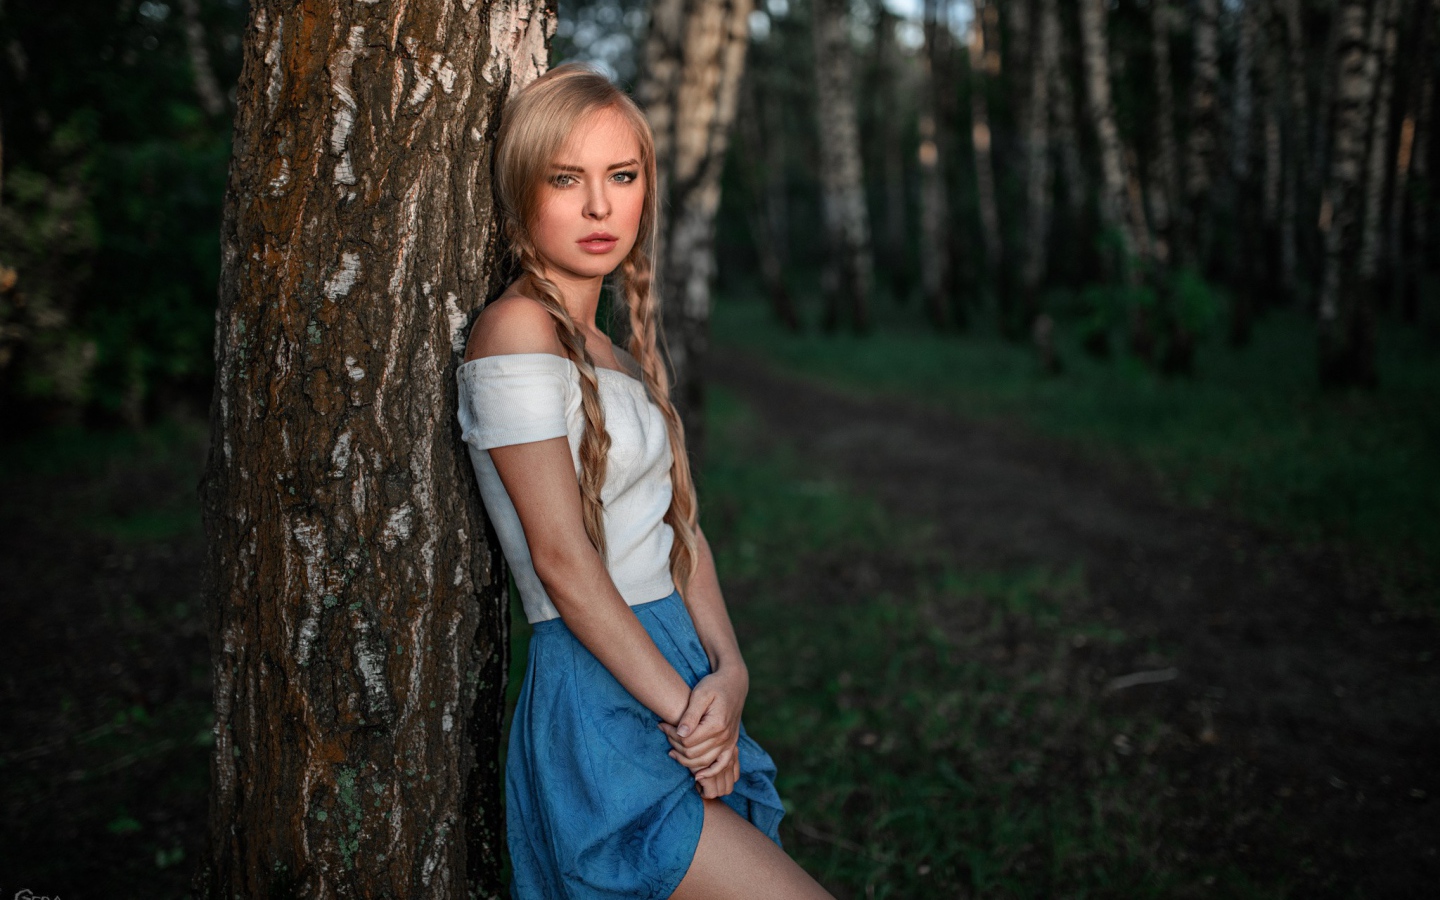 Девушка с русыми косами прислонилась к дереву